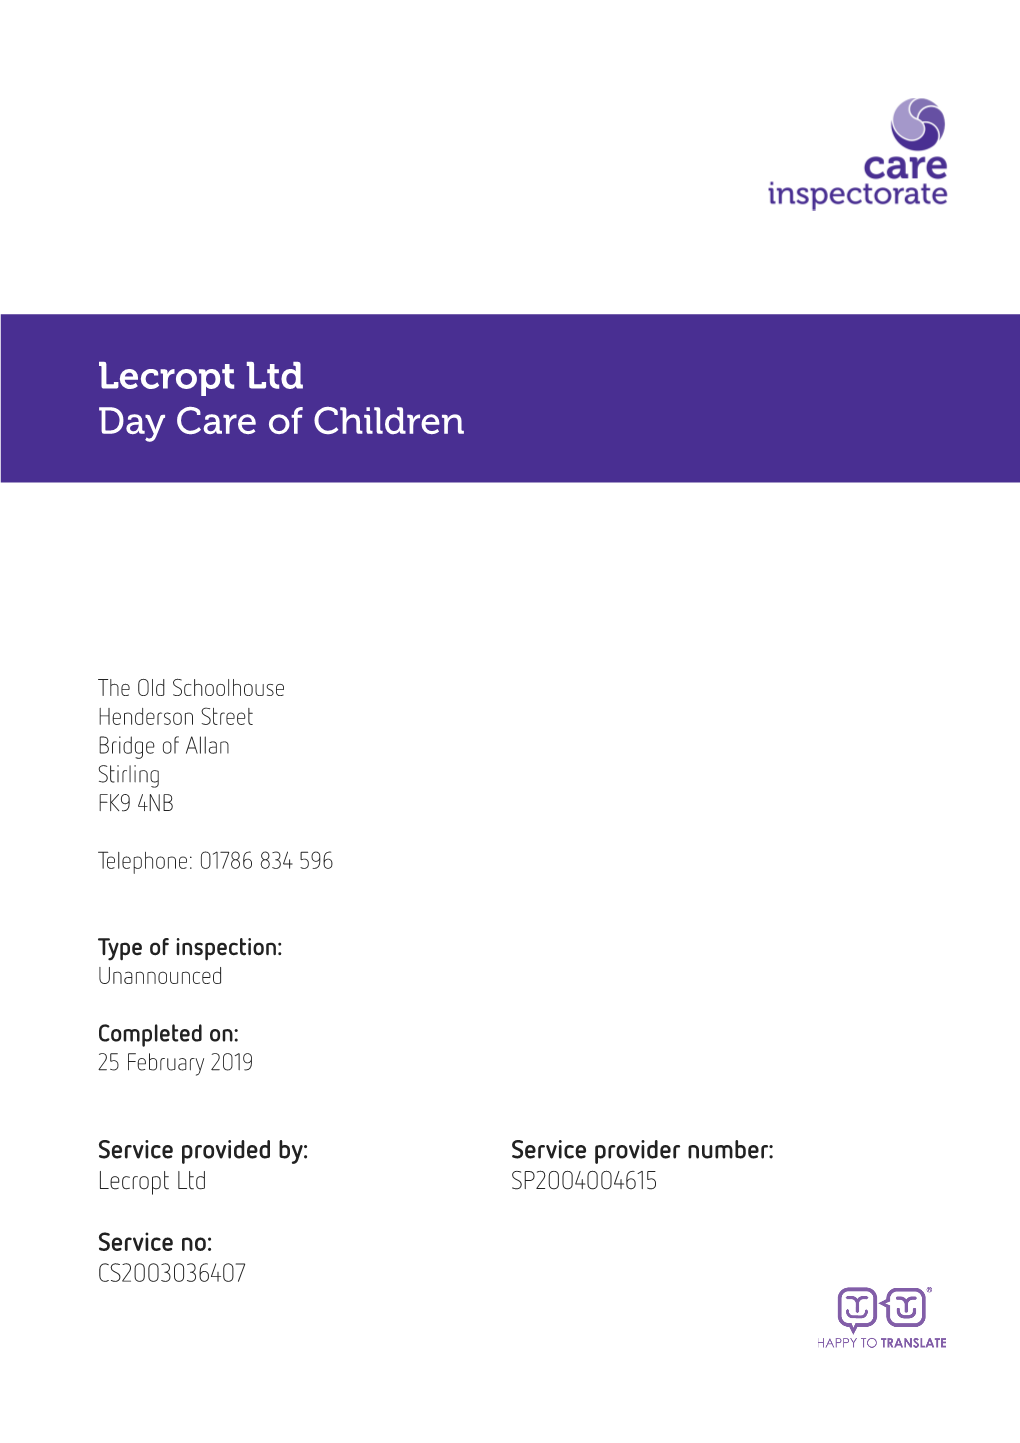 Lecropt Ltd Day Care of Children